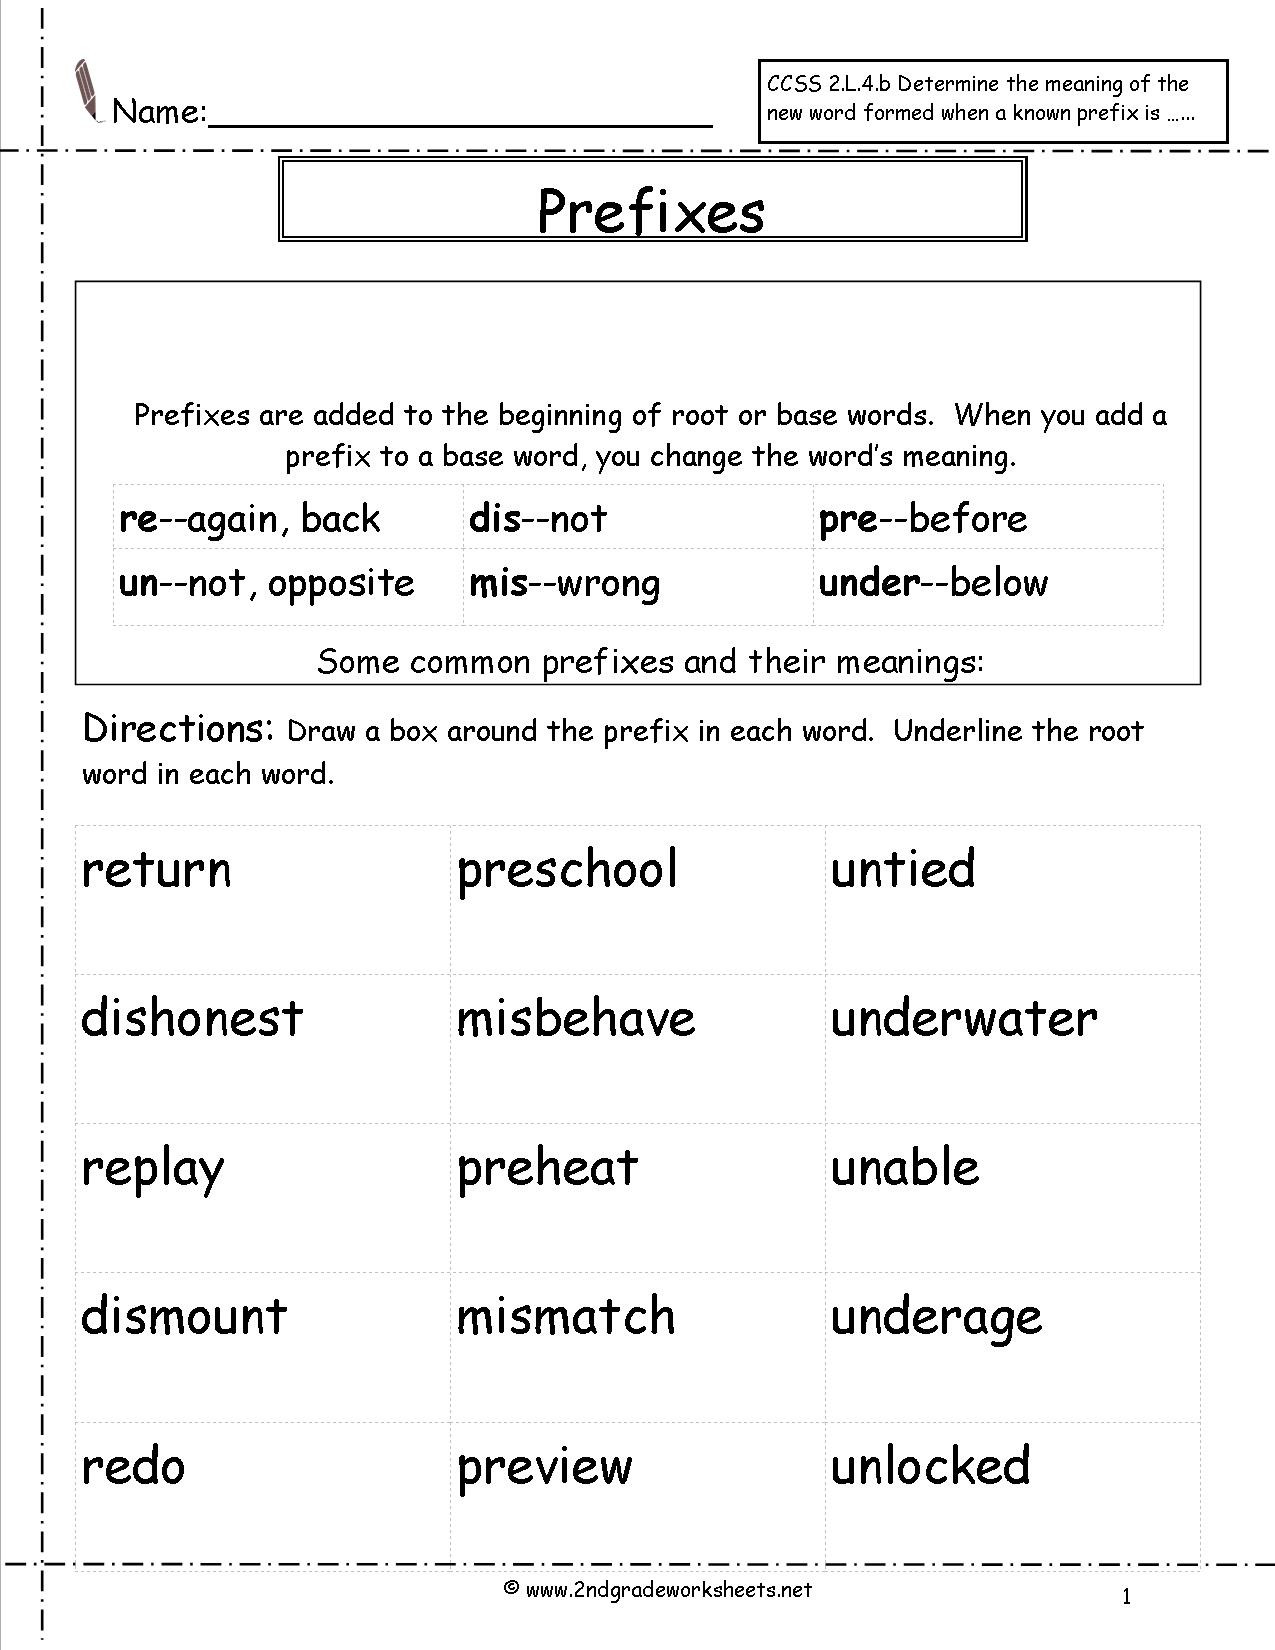 Prefixes Worksheets 3rd Grade Second Grade Prefixes Worksheets